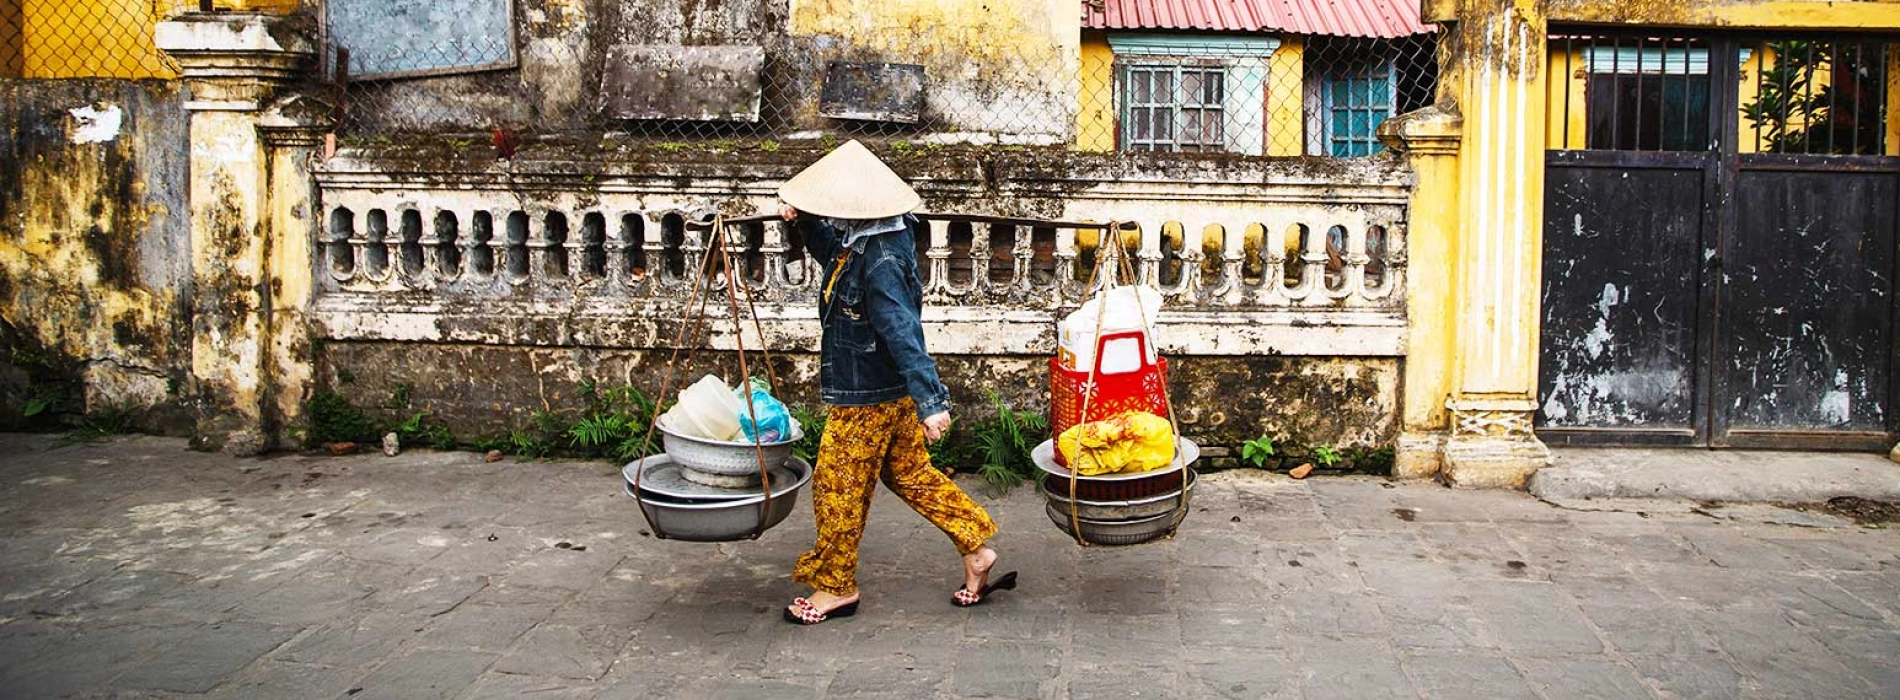 Vietnam blog